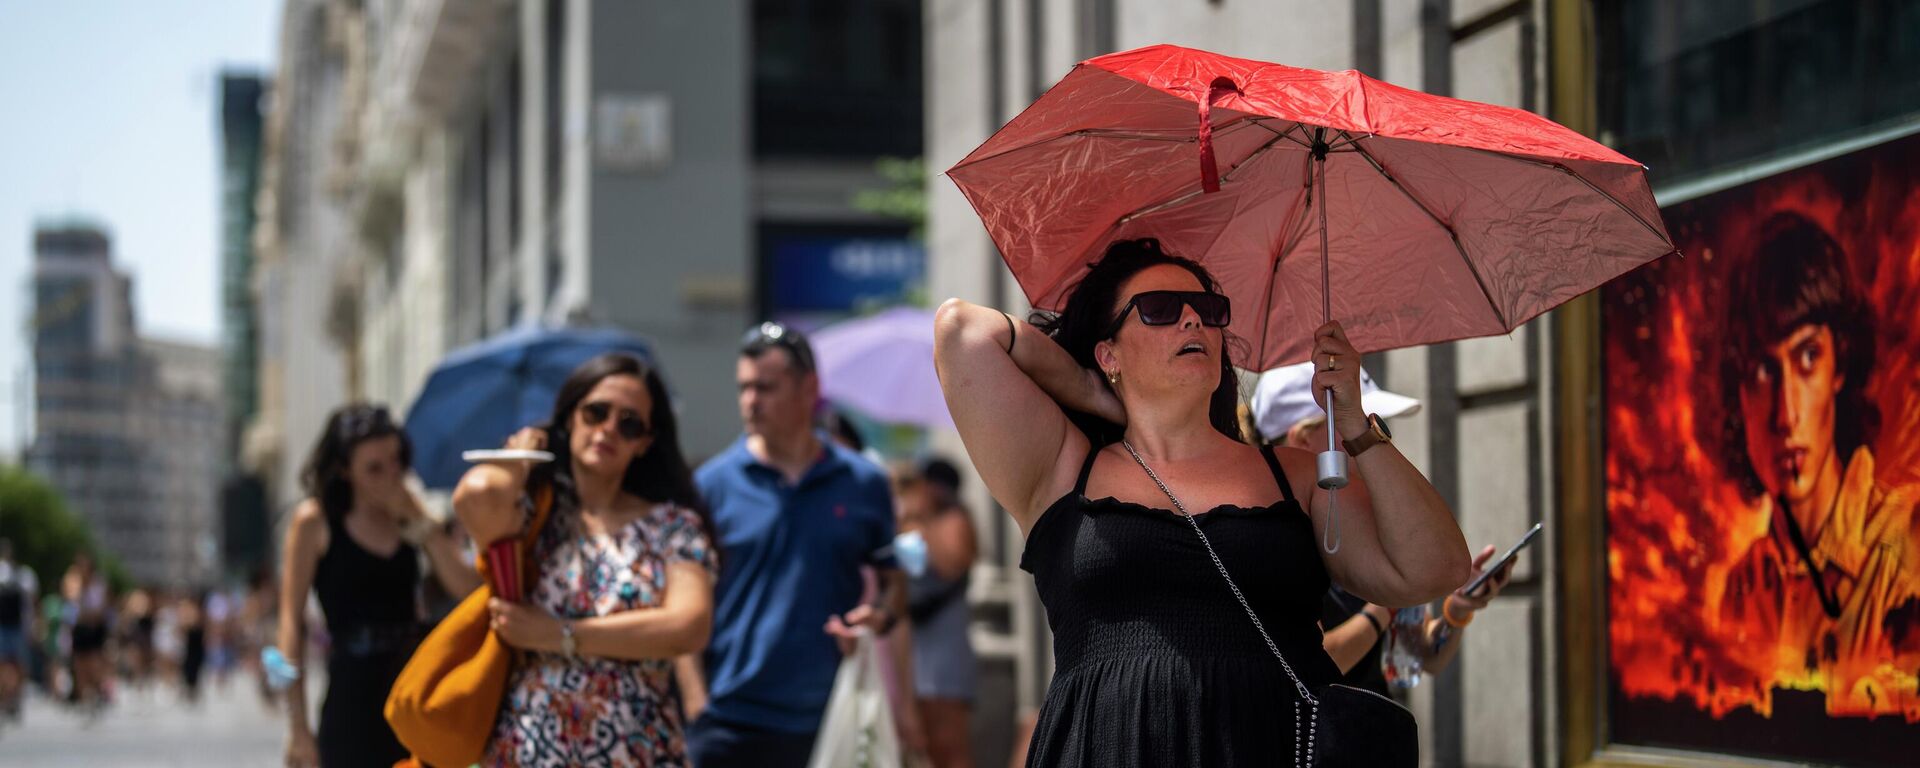 امرأة تحمل مظلة للاحتماء من أشعة الشمس خلال يوم مشمس حار في مدريد، إسبانيا، 18 يوليو 2022. - سبوتنيك عربي, 1920, 26.07.2022